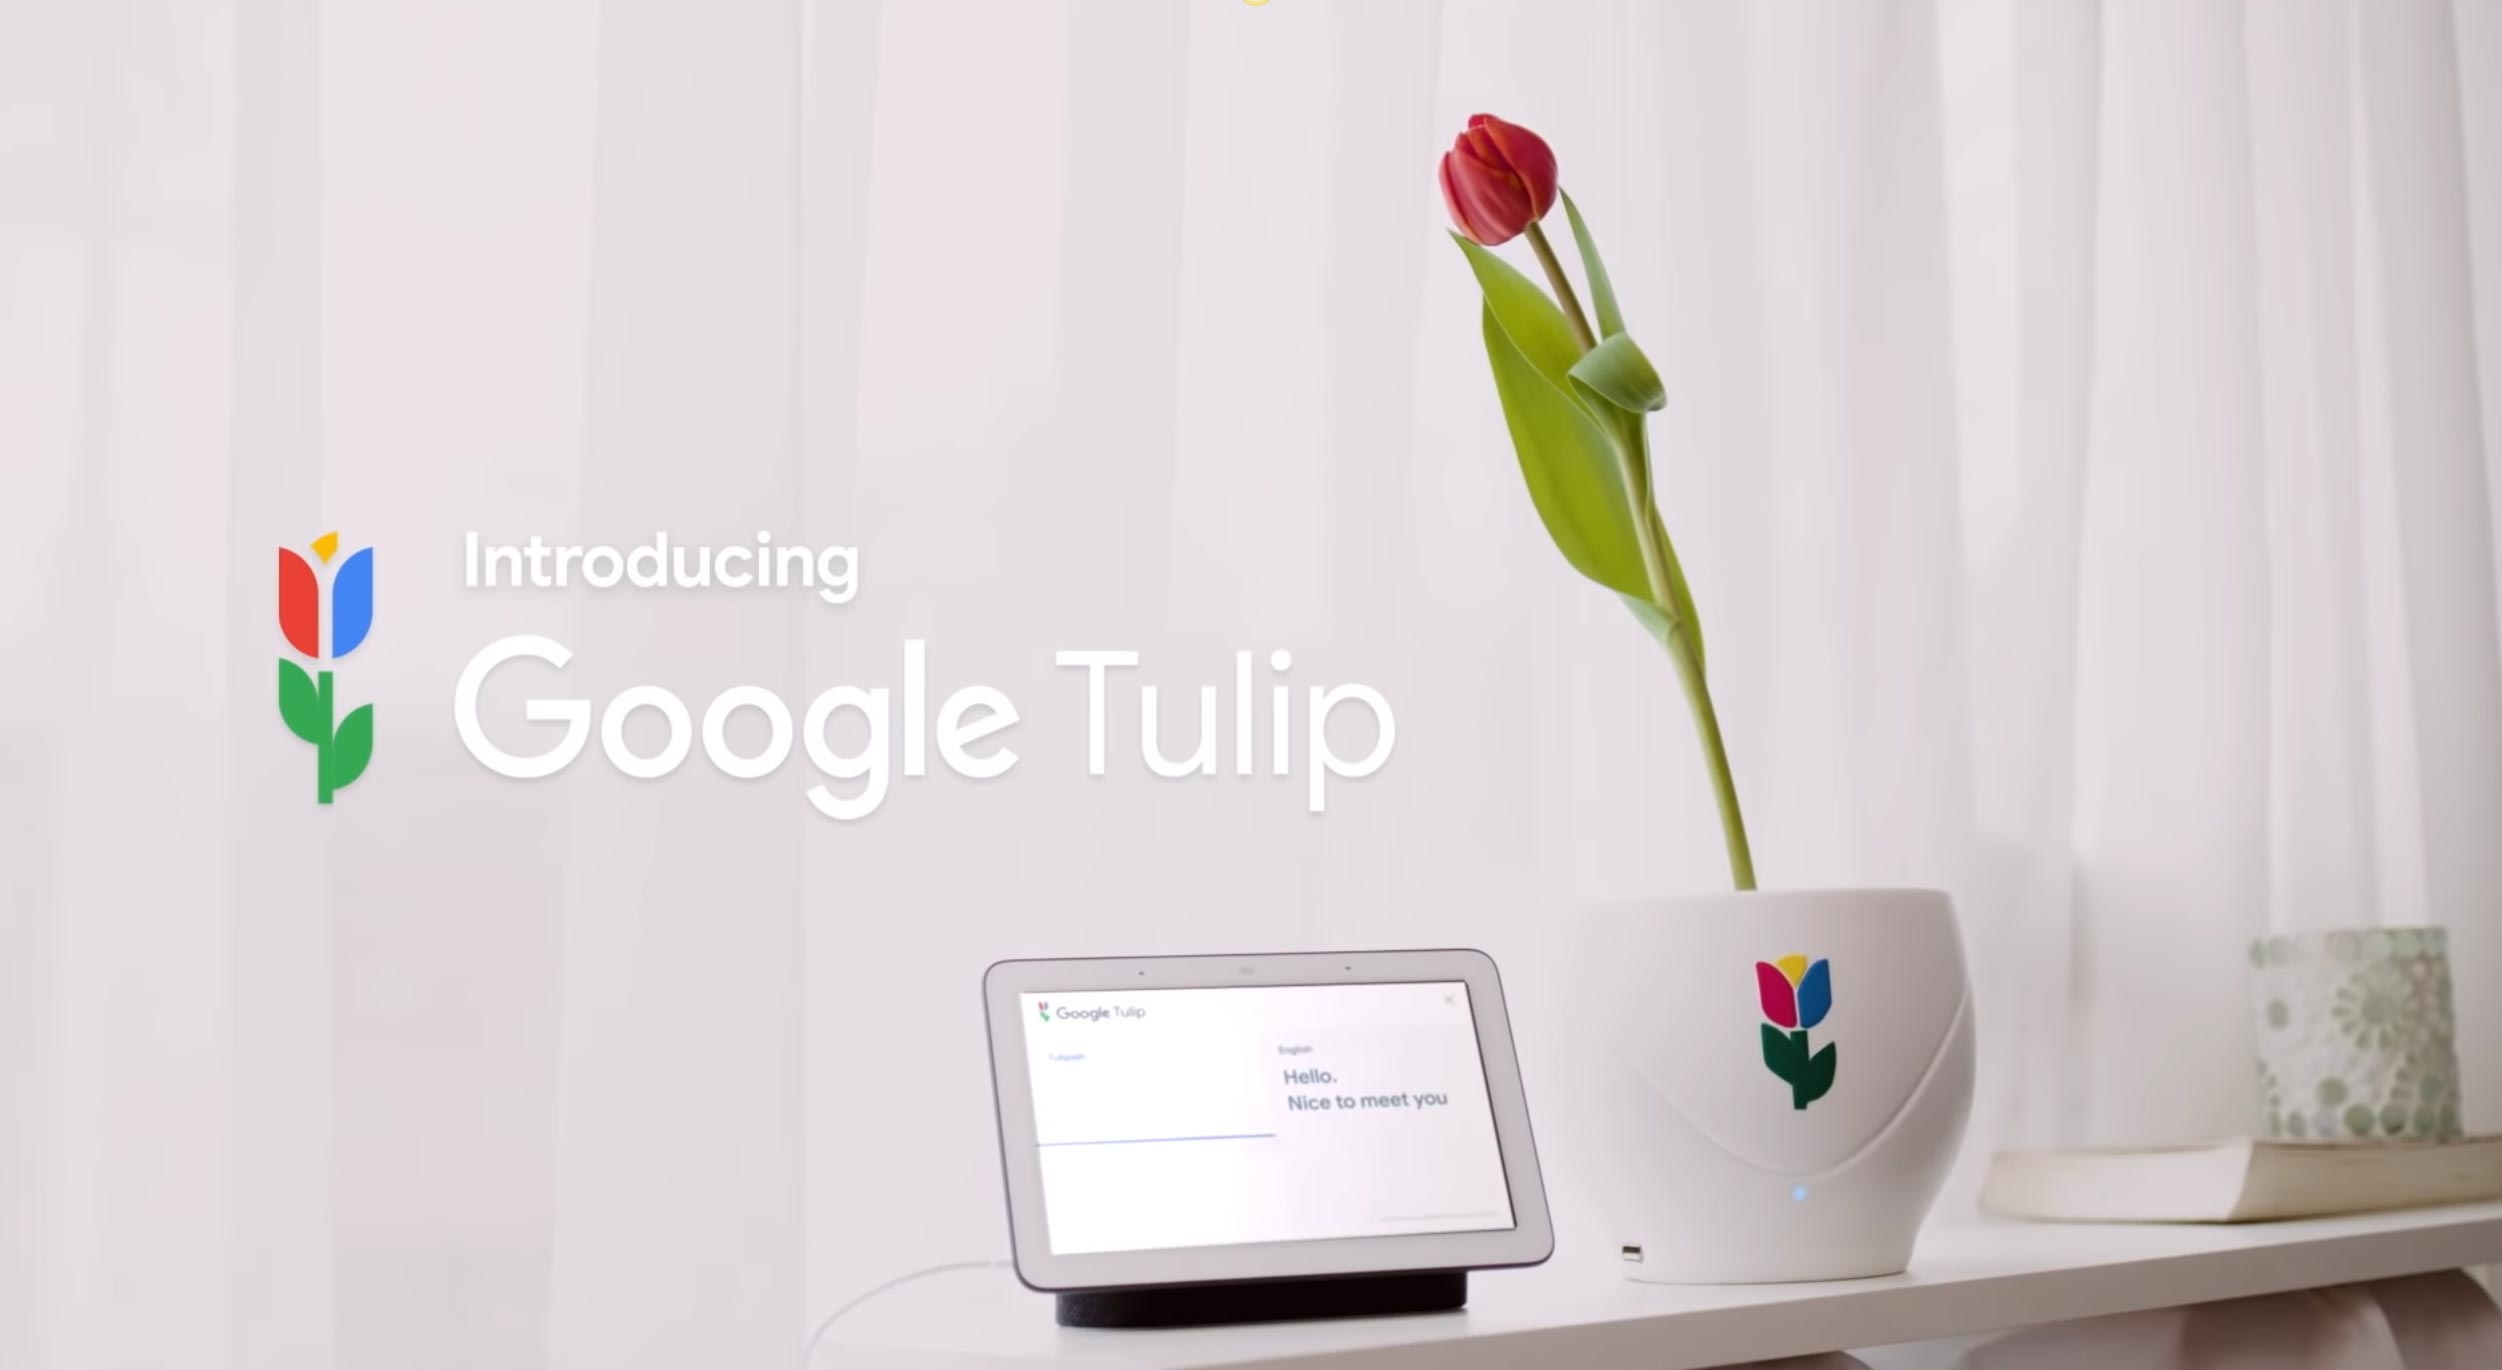 Google Tulip